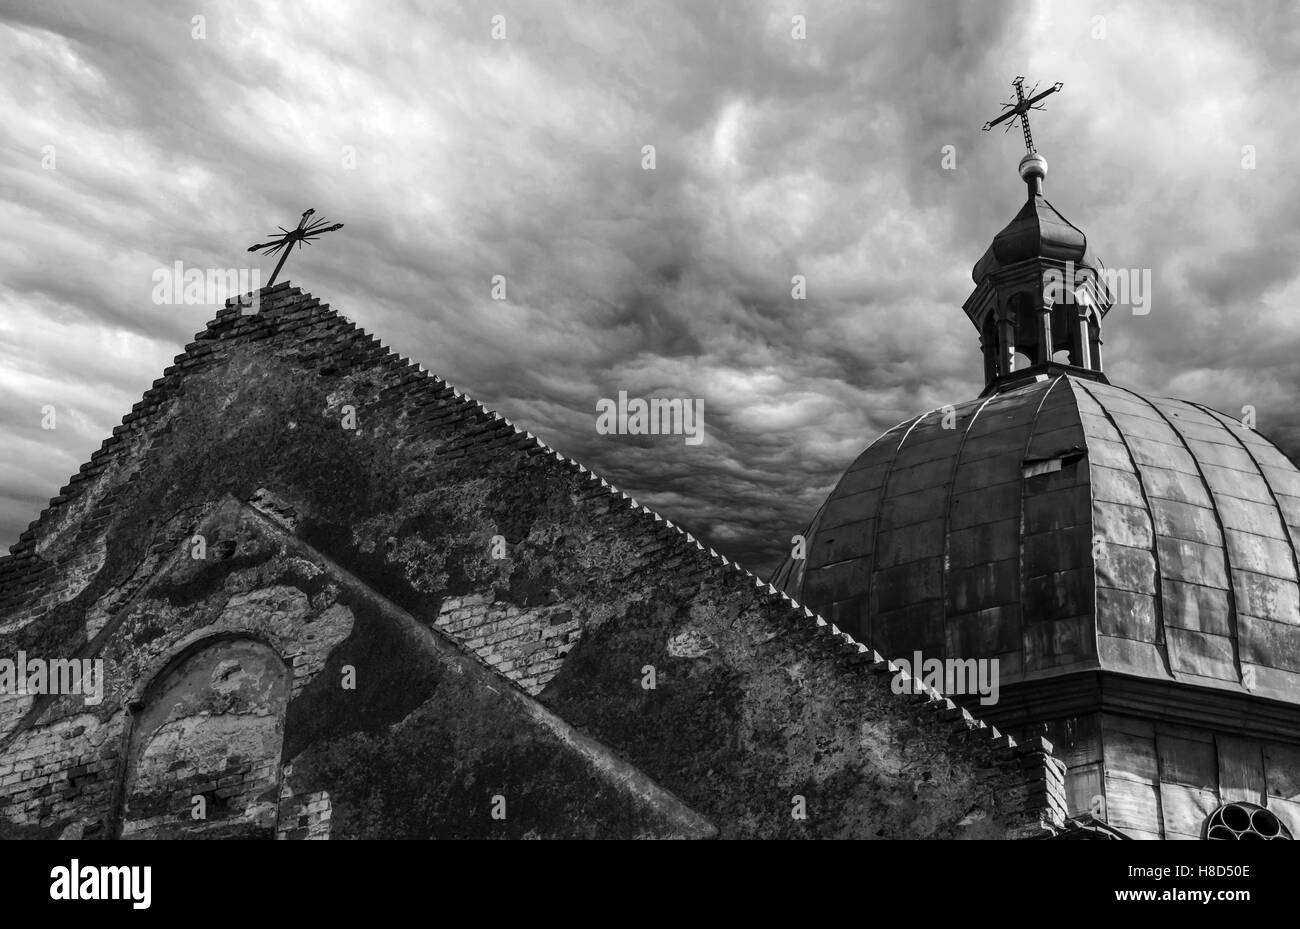 Ruine der alten und verlassenen orthodoxen Kirche gegen schwere Wolken, versammeln sich dunkle Wolken über orthodoxe Kirche in Ruine Stockfoto